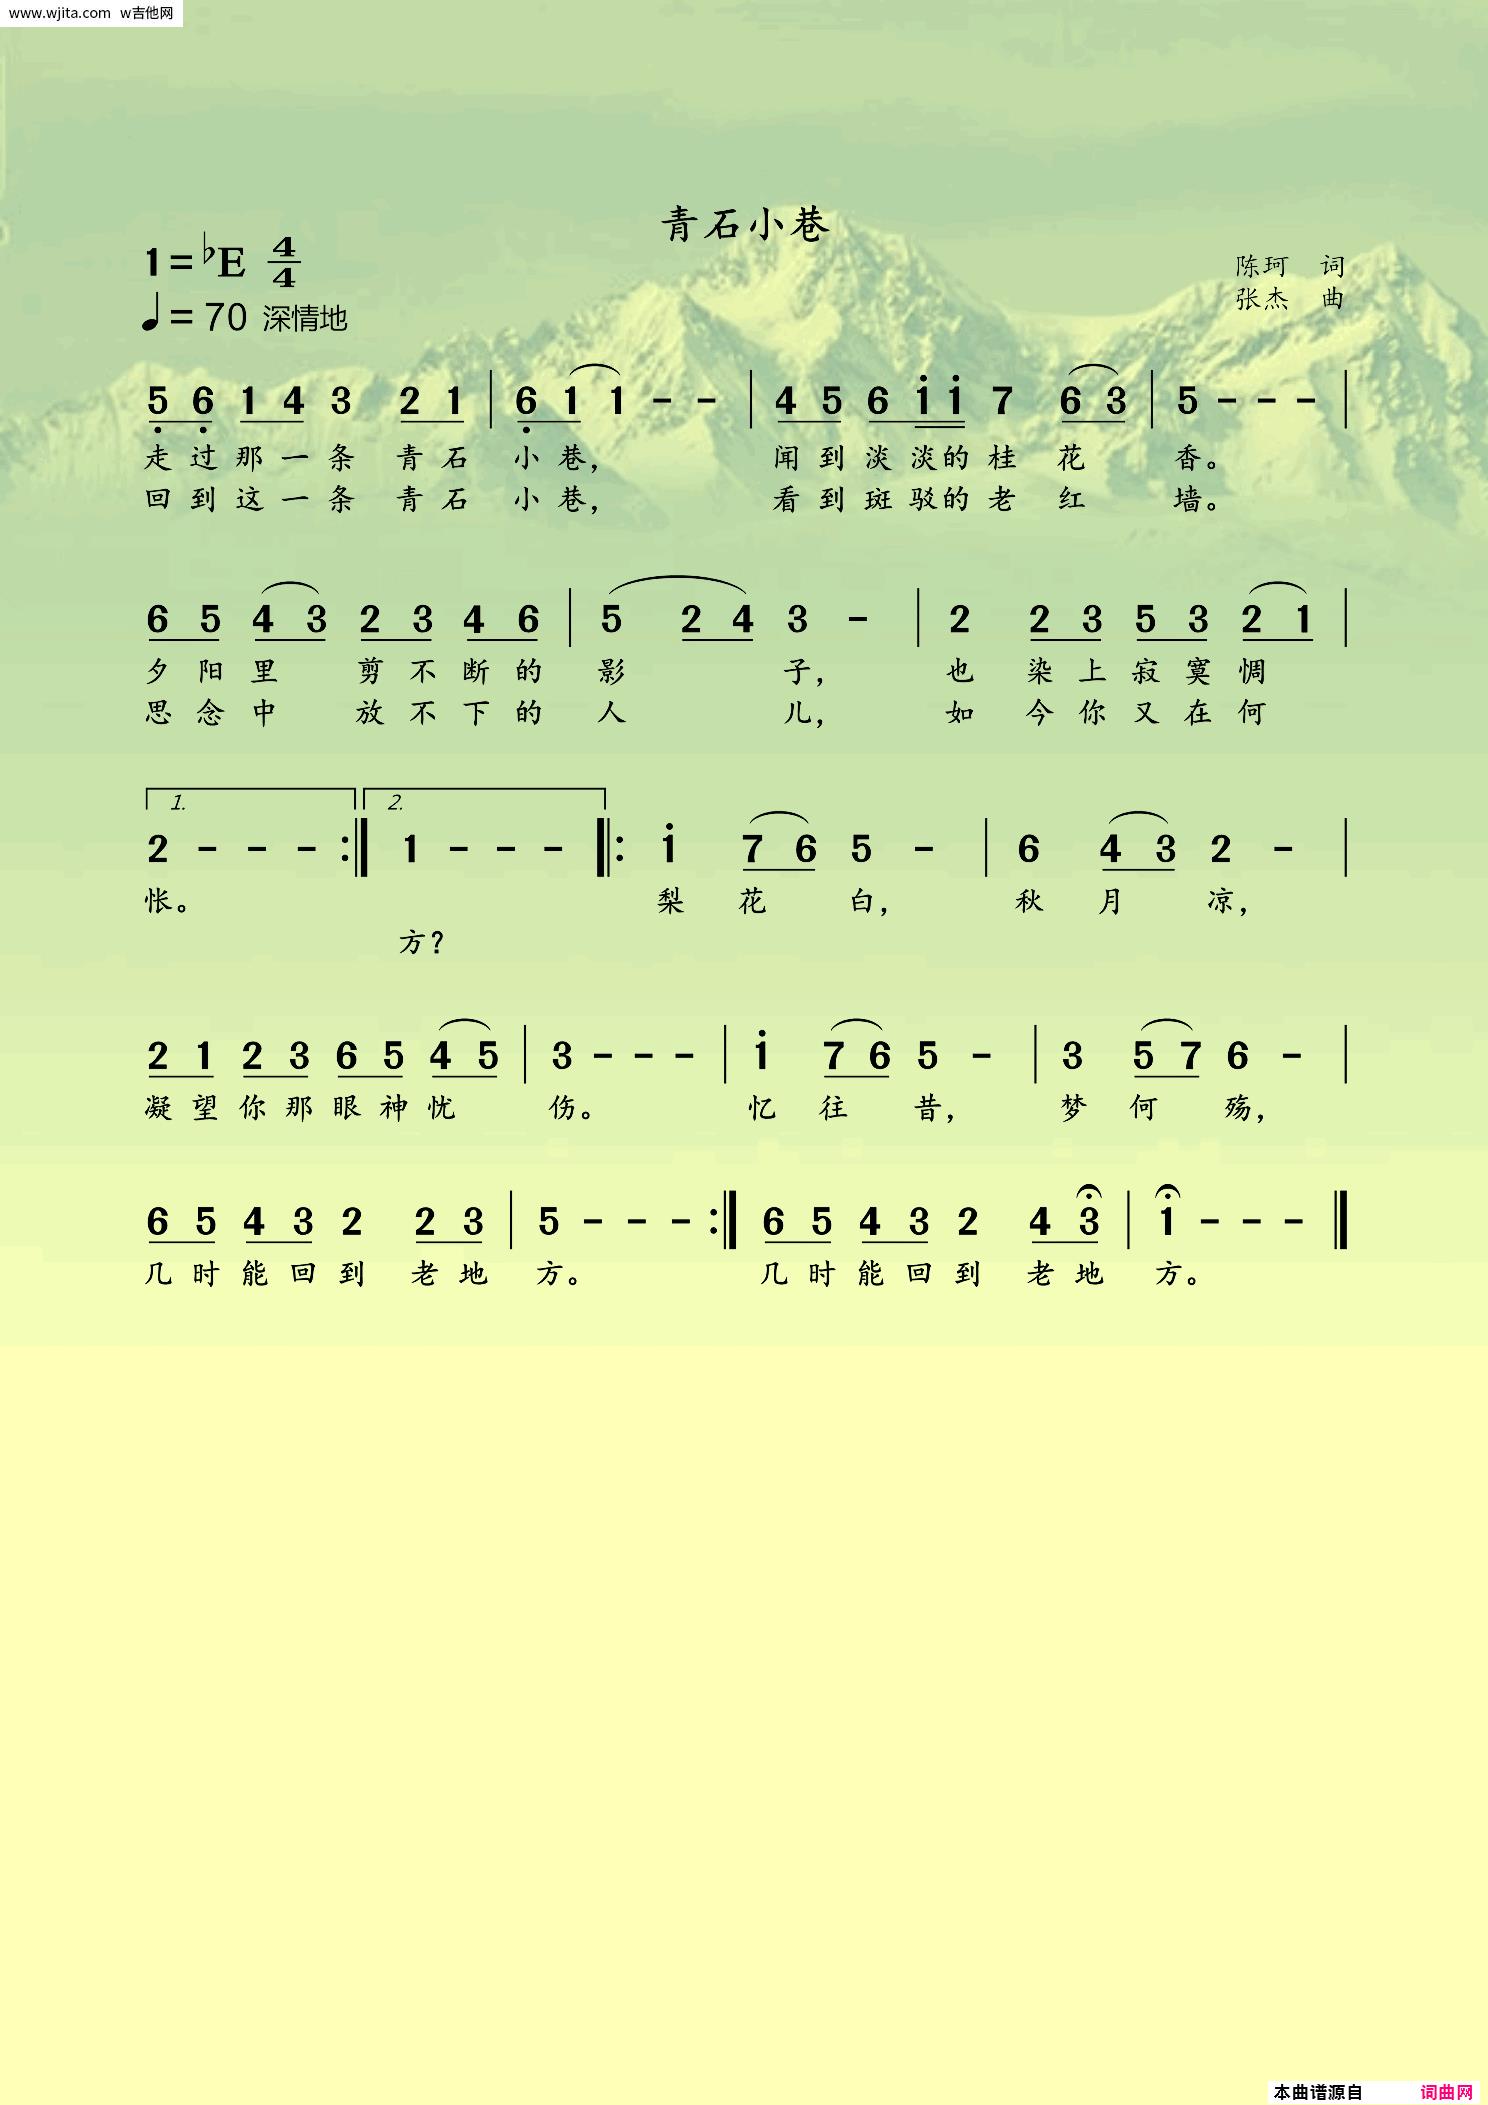 青石巷-原版-钢琴谱文件（五线谱、双手简谱、数字谱、Midi、PDF）免费下载